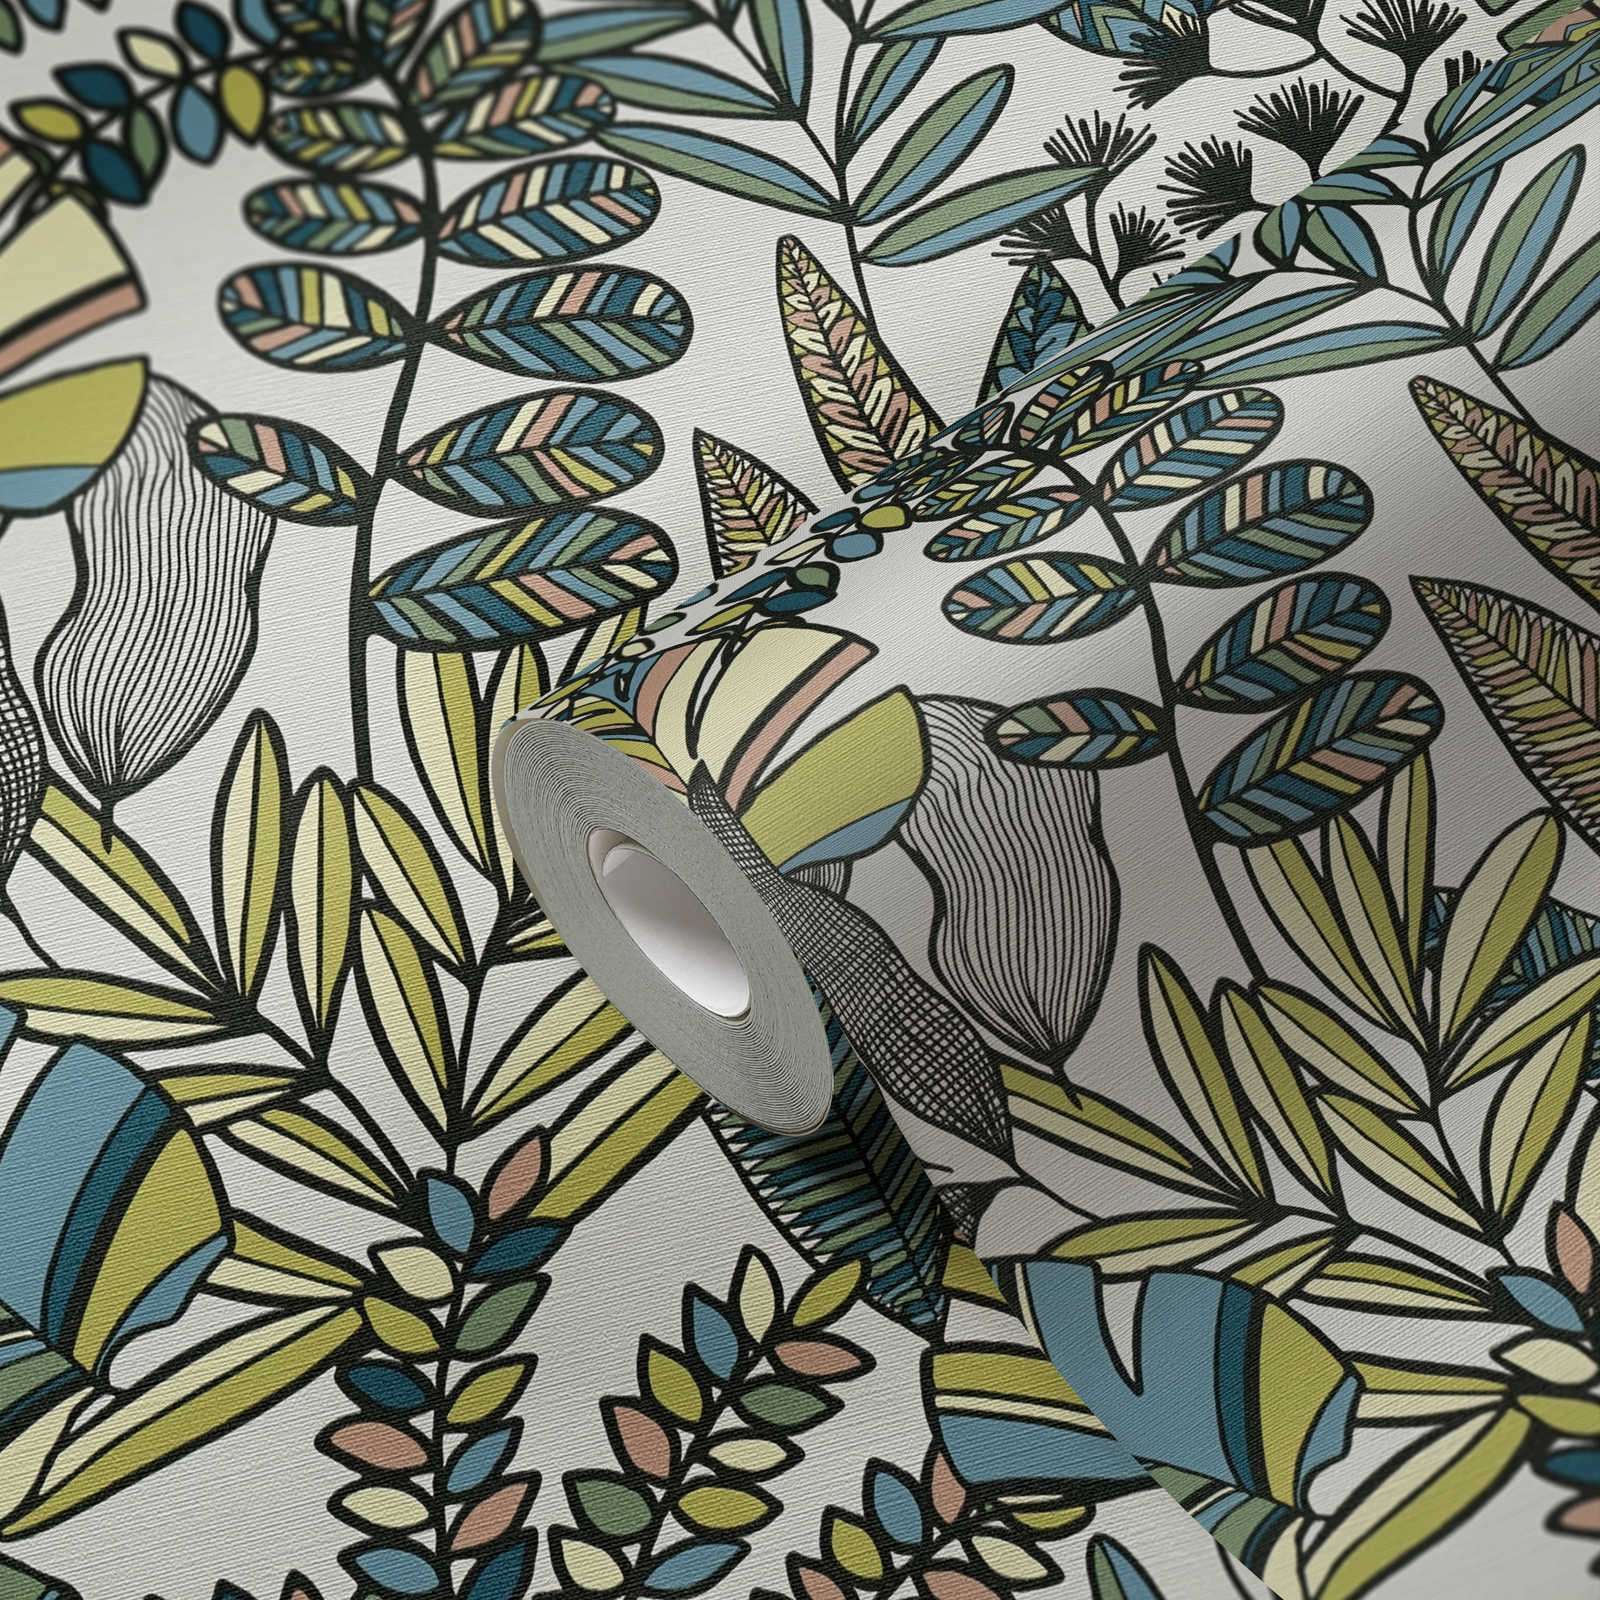             Vliestapete mit großen Blättern in kräftigen Farben – Weiß, Schwarz, Blau
        